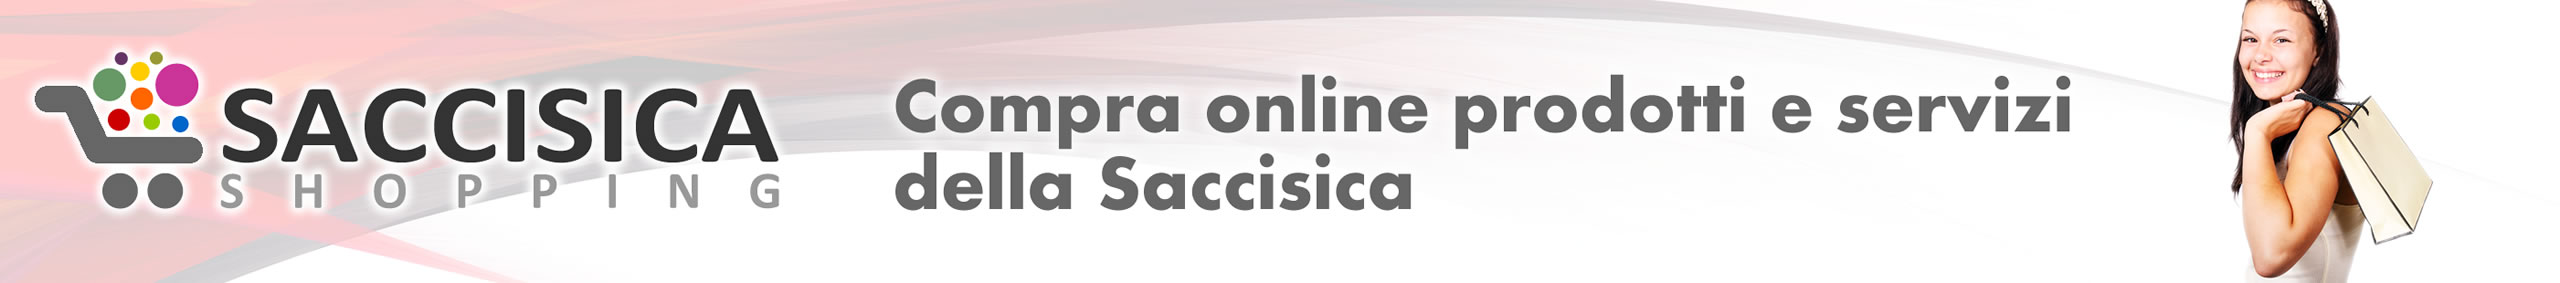 Banner Saccisica Shopping - Compra online servizi e prodotti della Saccisica